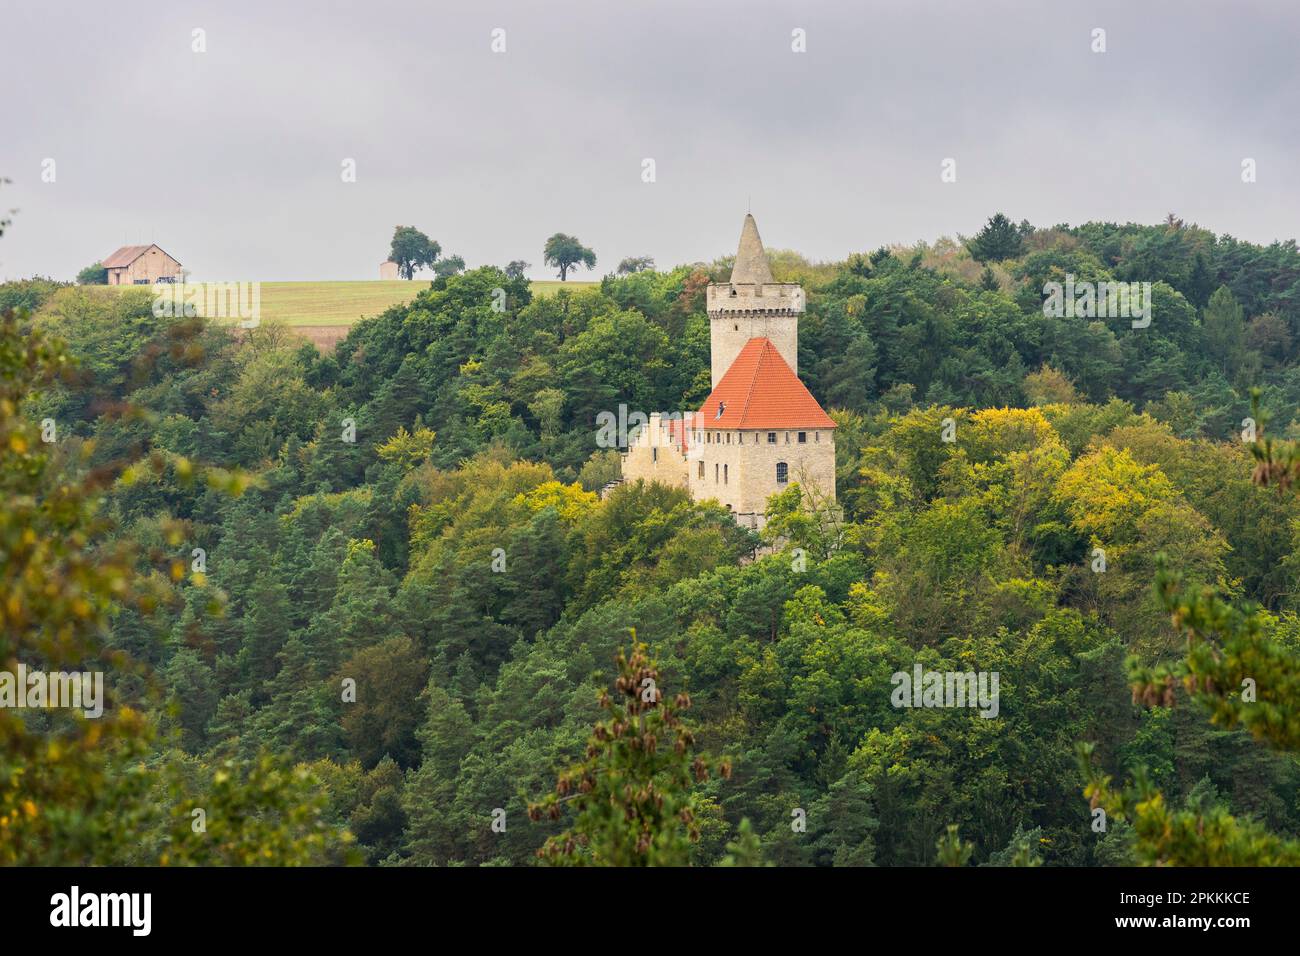 Castello di Kokorin, Area paesaggistica protetta di Kokorinsko, Boemia centrale, Repubblica Ceca (Czechia), Europa Foto Stock